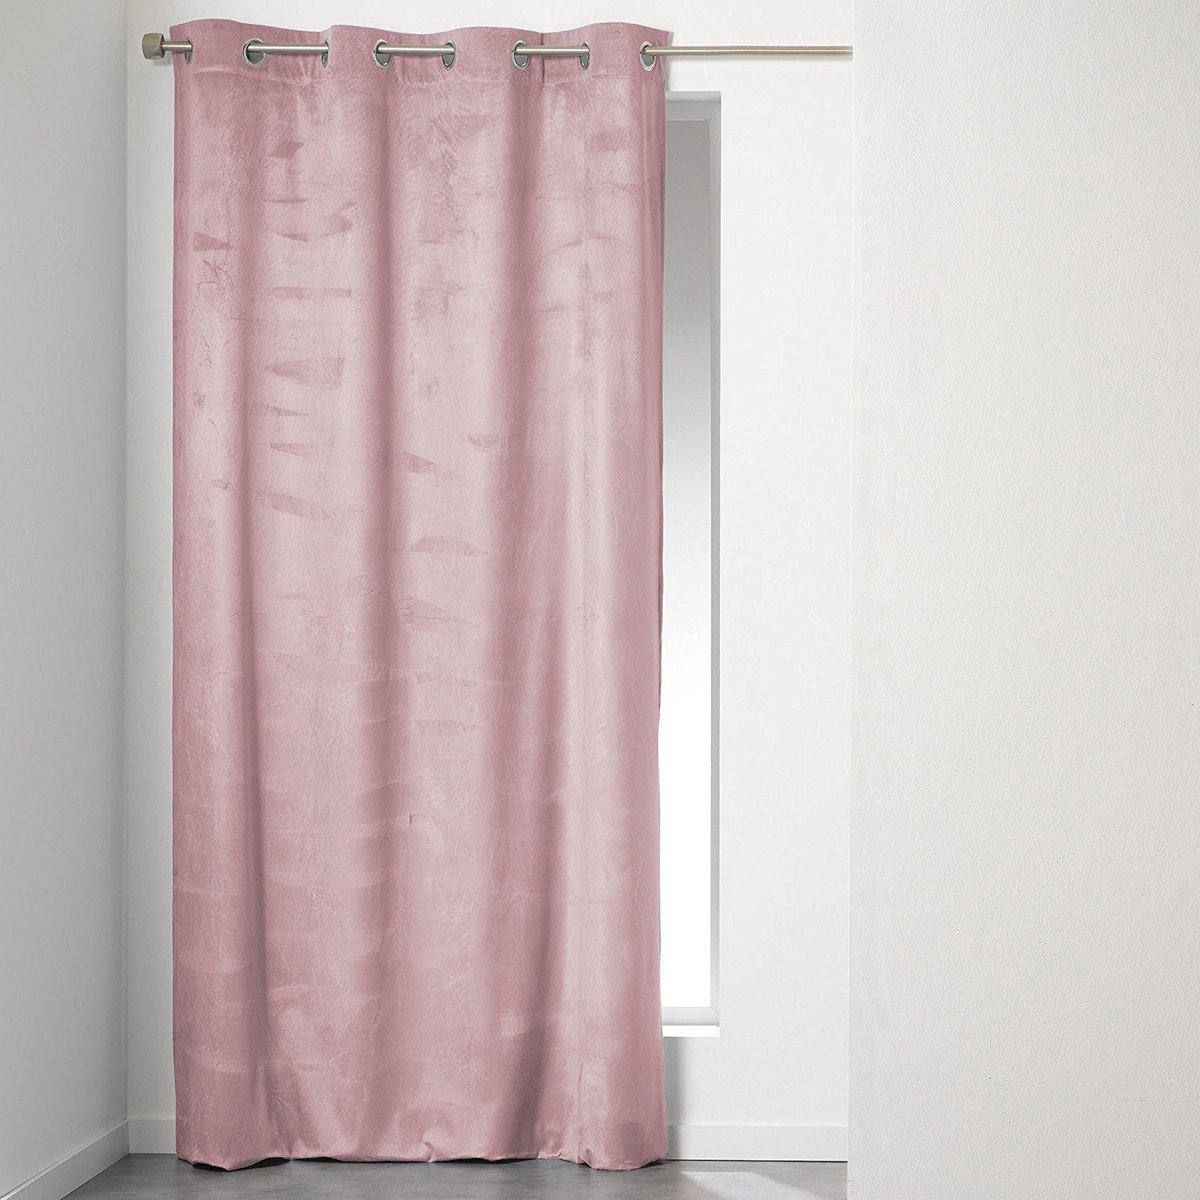 ader Industrialiseren het internet Sleepp - Velvet gordijn - Velours gordijn met ringen - 140 x 240 cm - roze  | bol.com